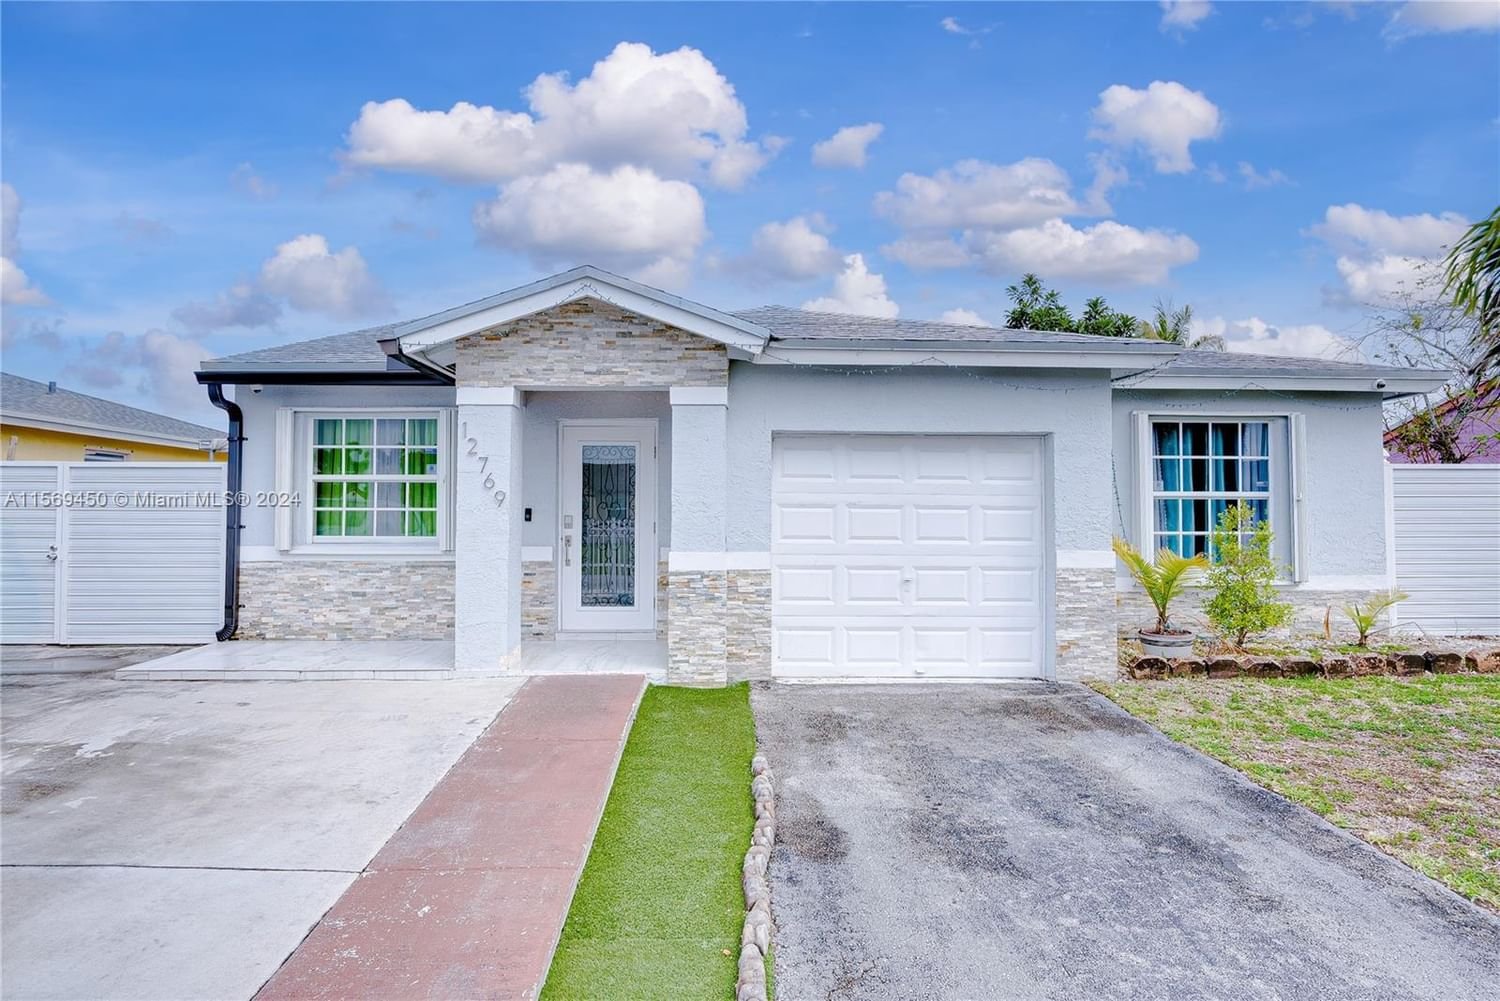 Real estate property located at 12769 266th Ter, Miami-Dade County, NAROCA ESTATES SEC 2, Homestead, FL